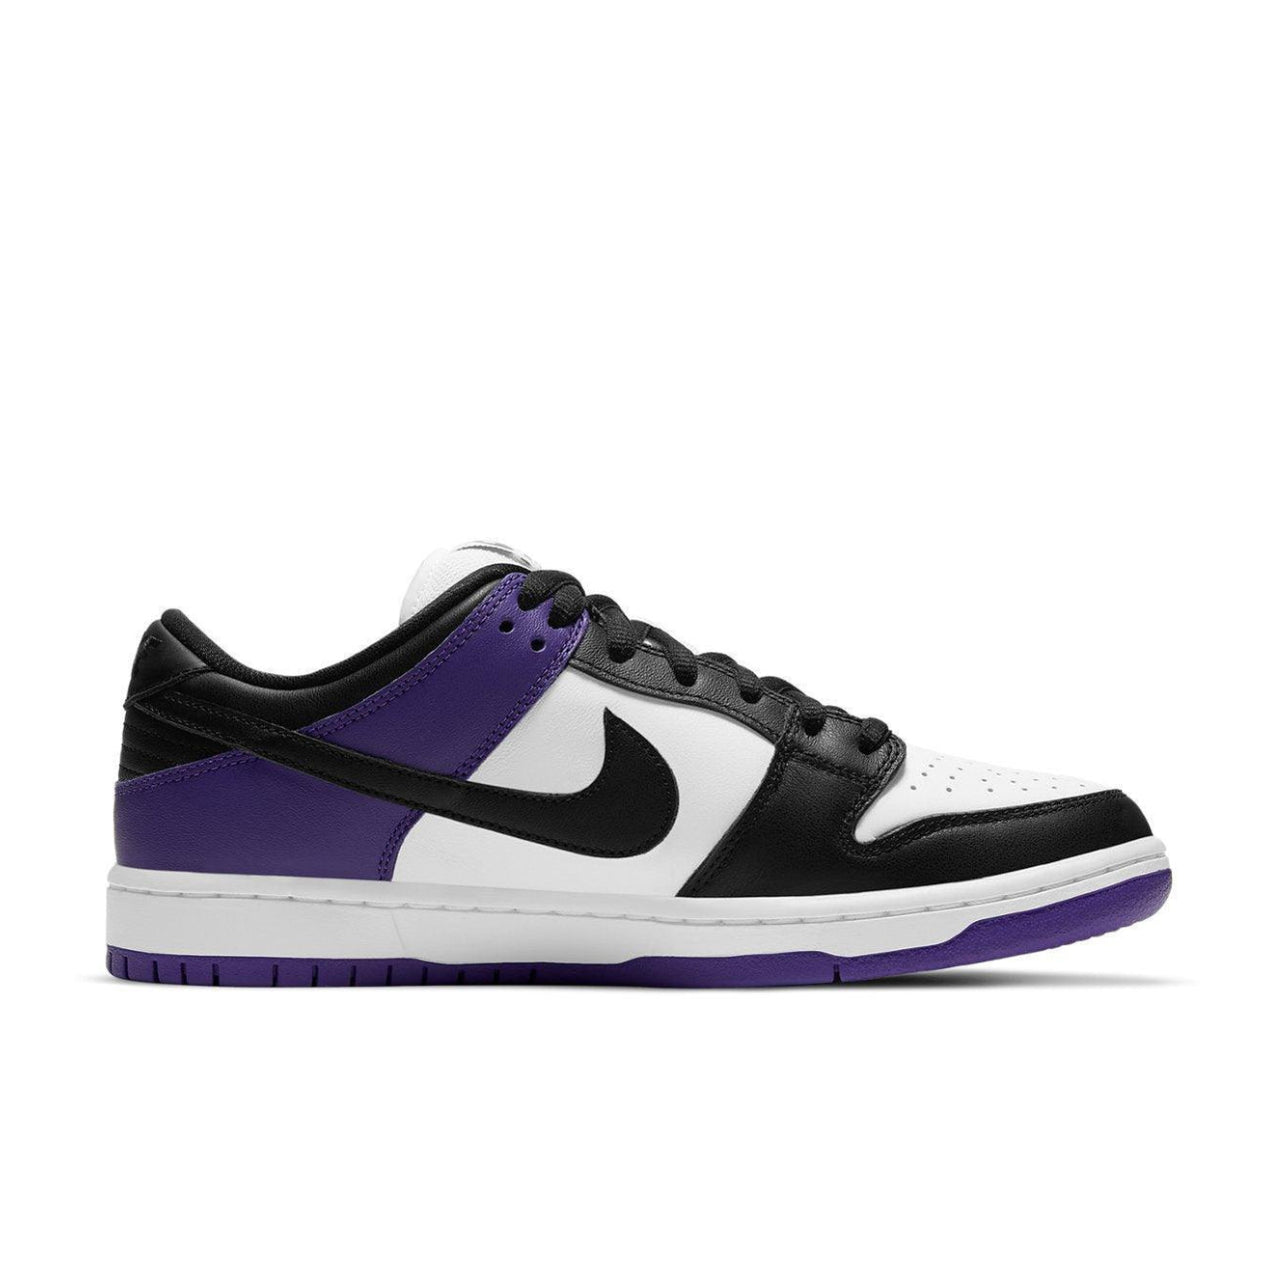 Nike SB Dunk Low Court Purple - BQ6817-500 - Right